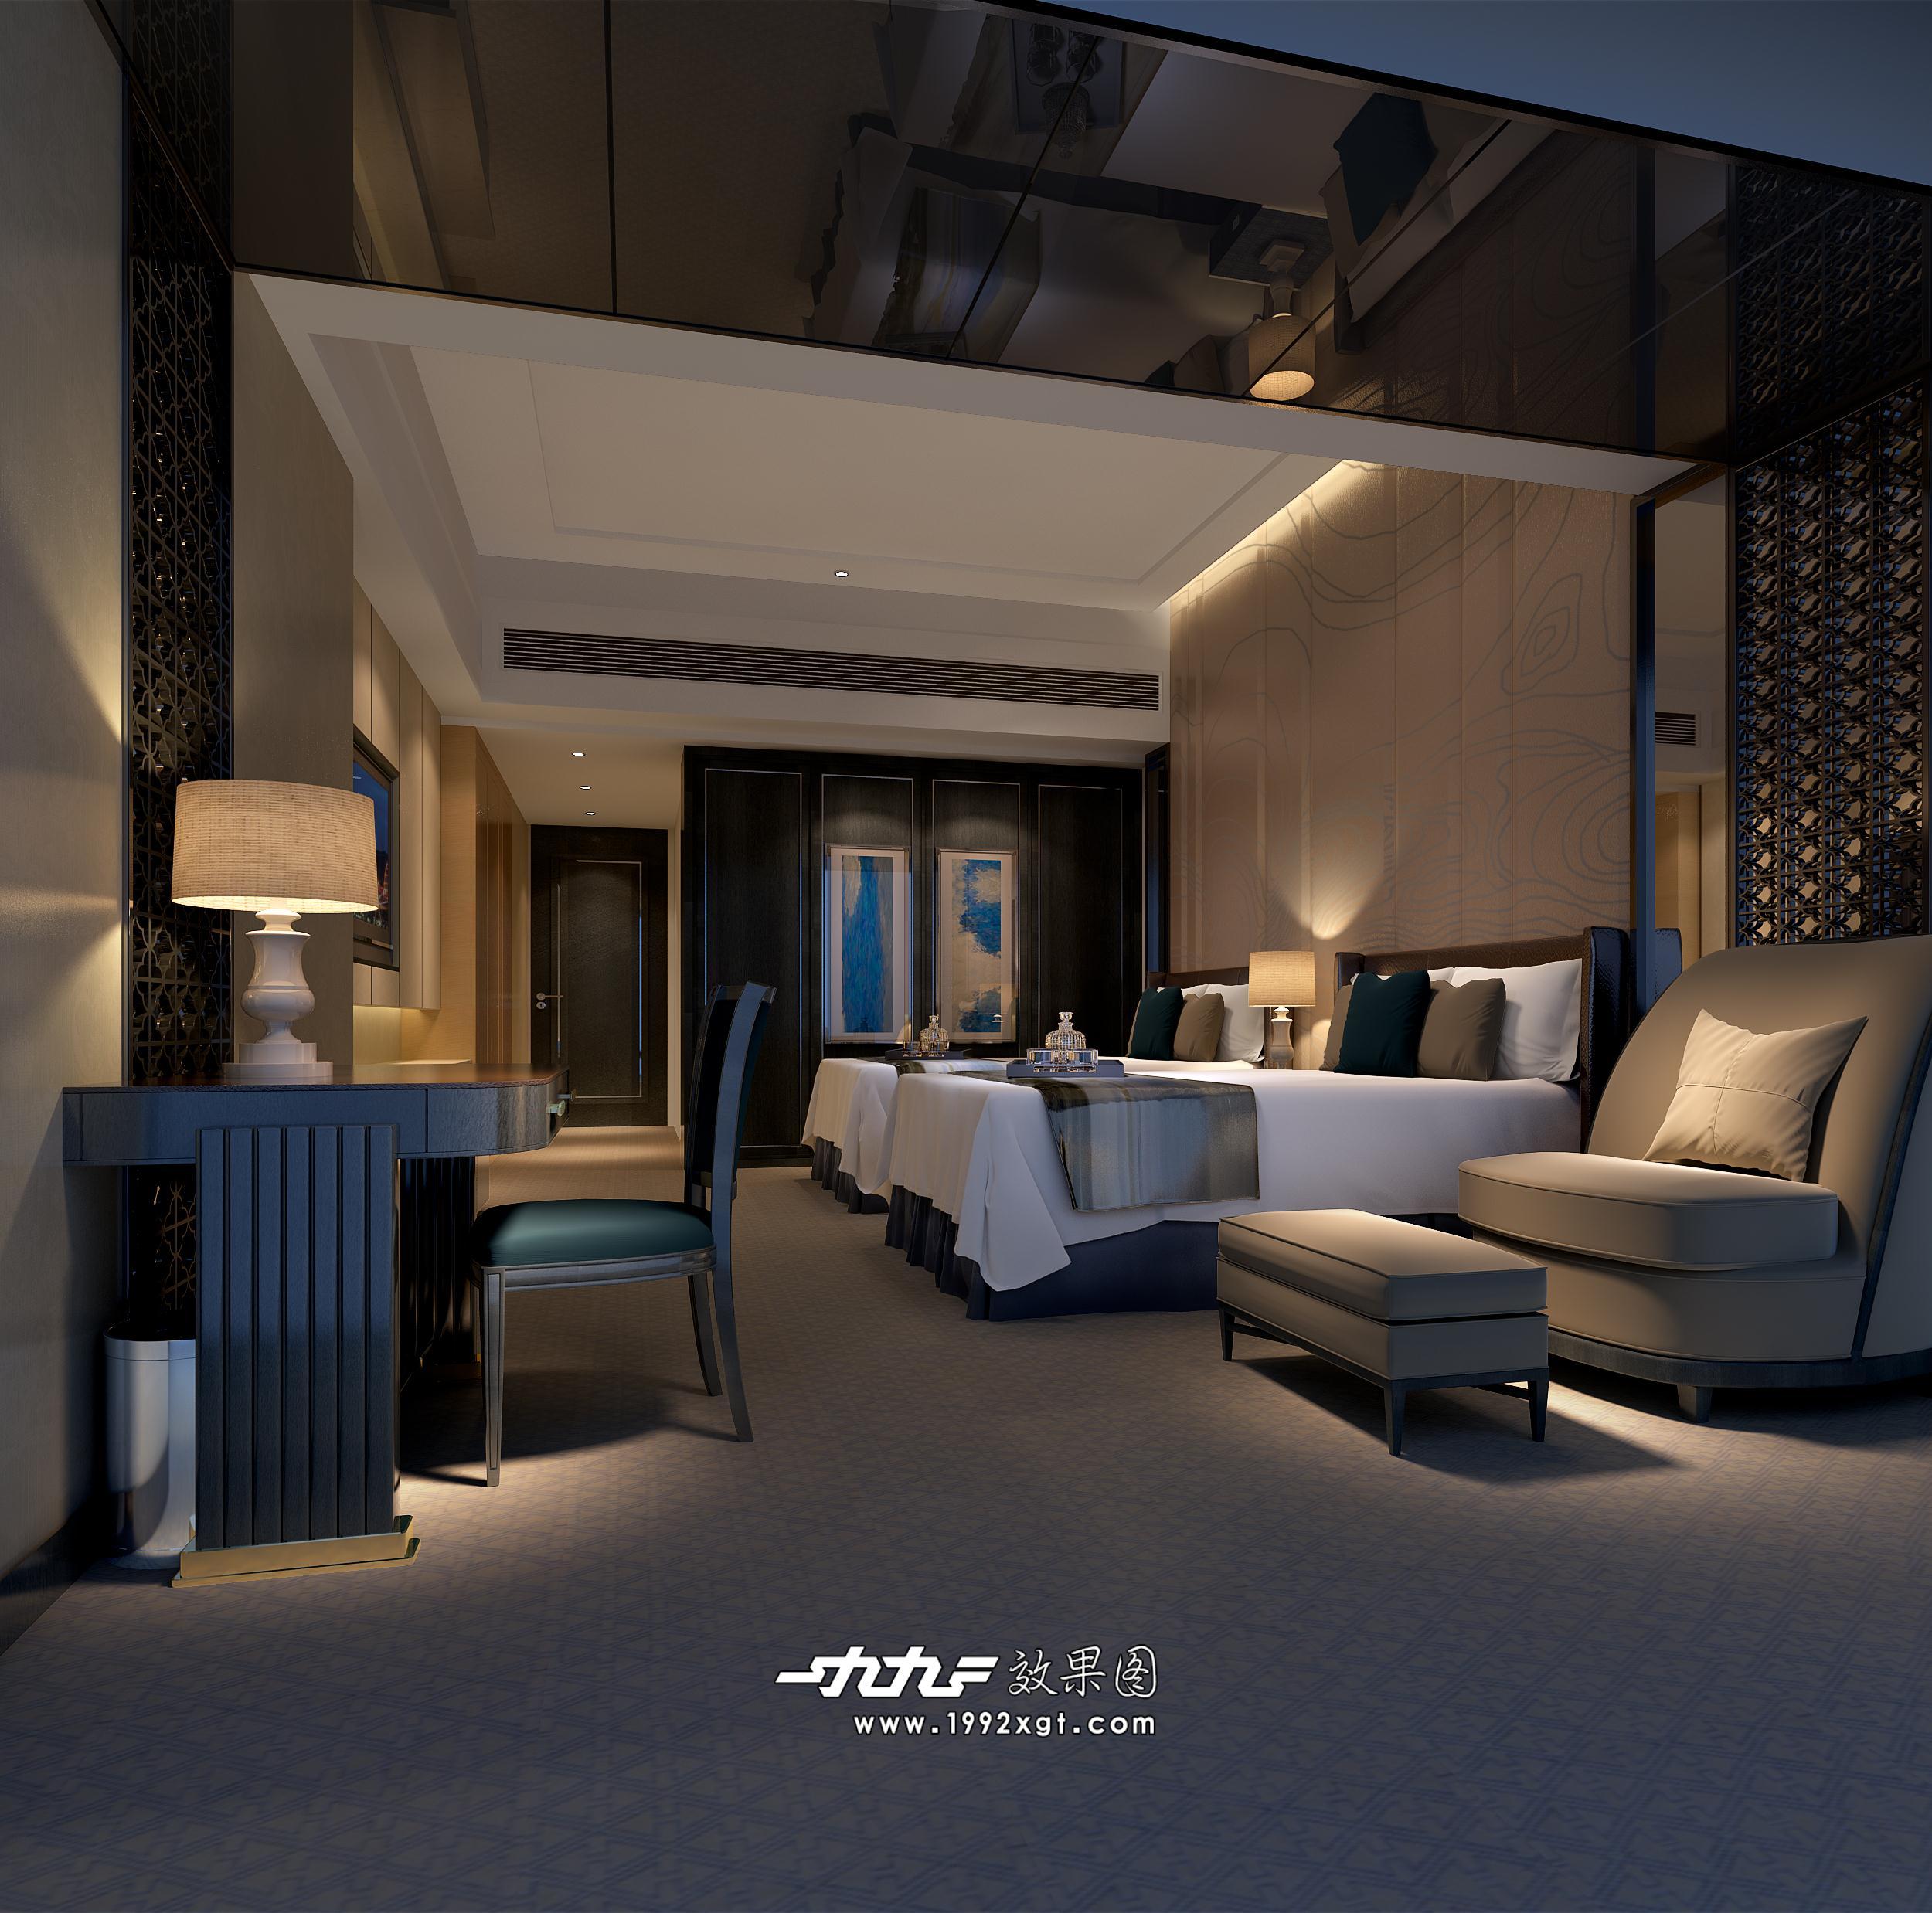 新中式酒店标间卧室模型+免费3D模型下载+免费SU模型下载+炫云云模型网站